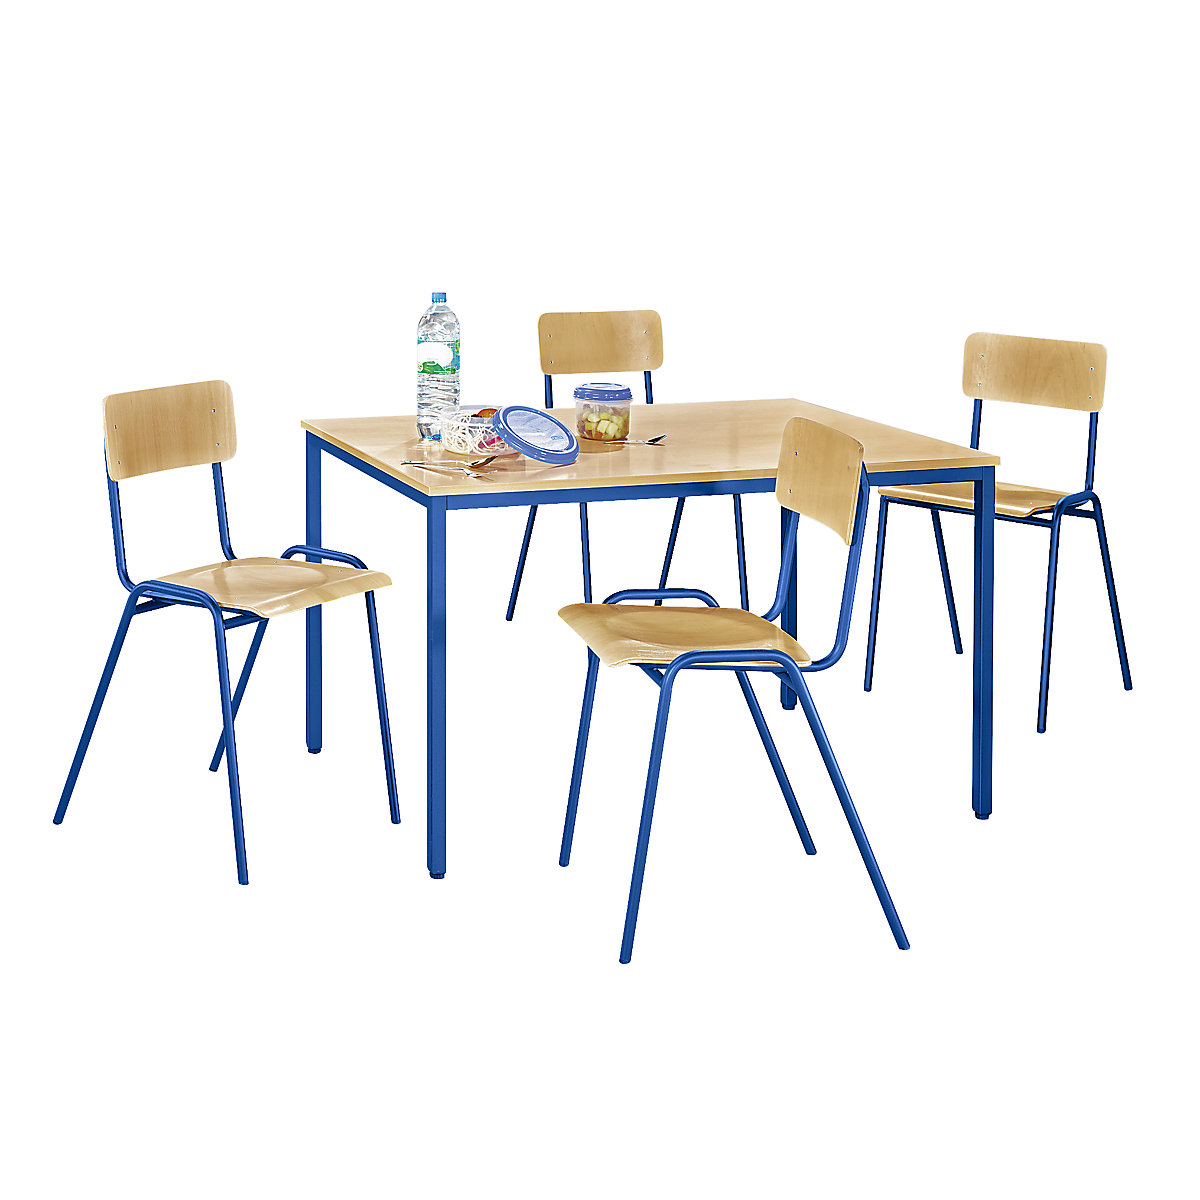 EUROKRAFTbasic Mehrzweck-Sitzgruppe, 1 Tisch, 4 Stühle, Tischplatte Buche-Dekor, Gestell enzianblau